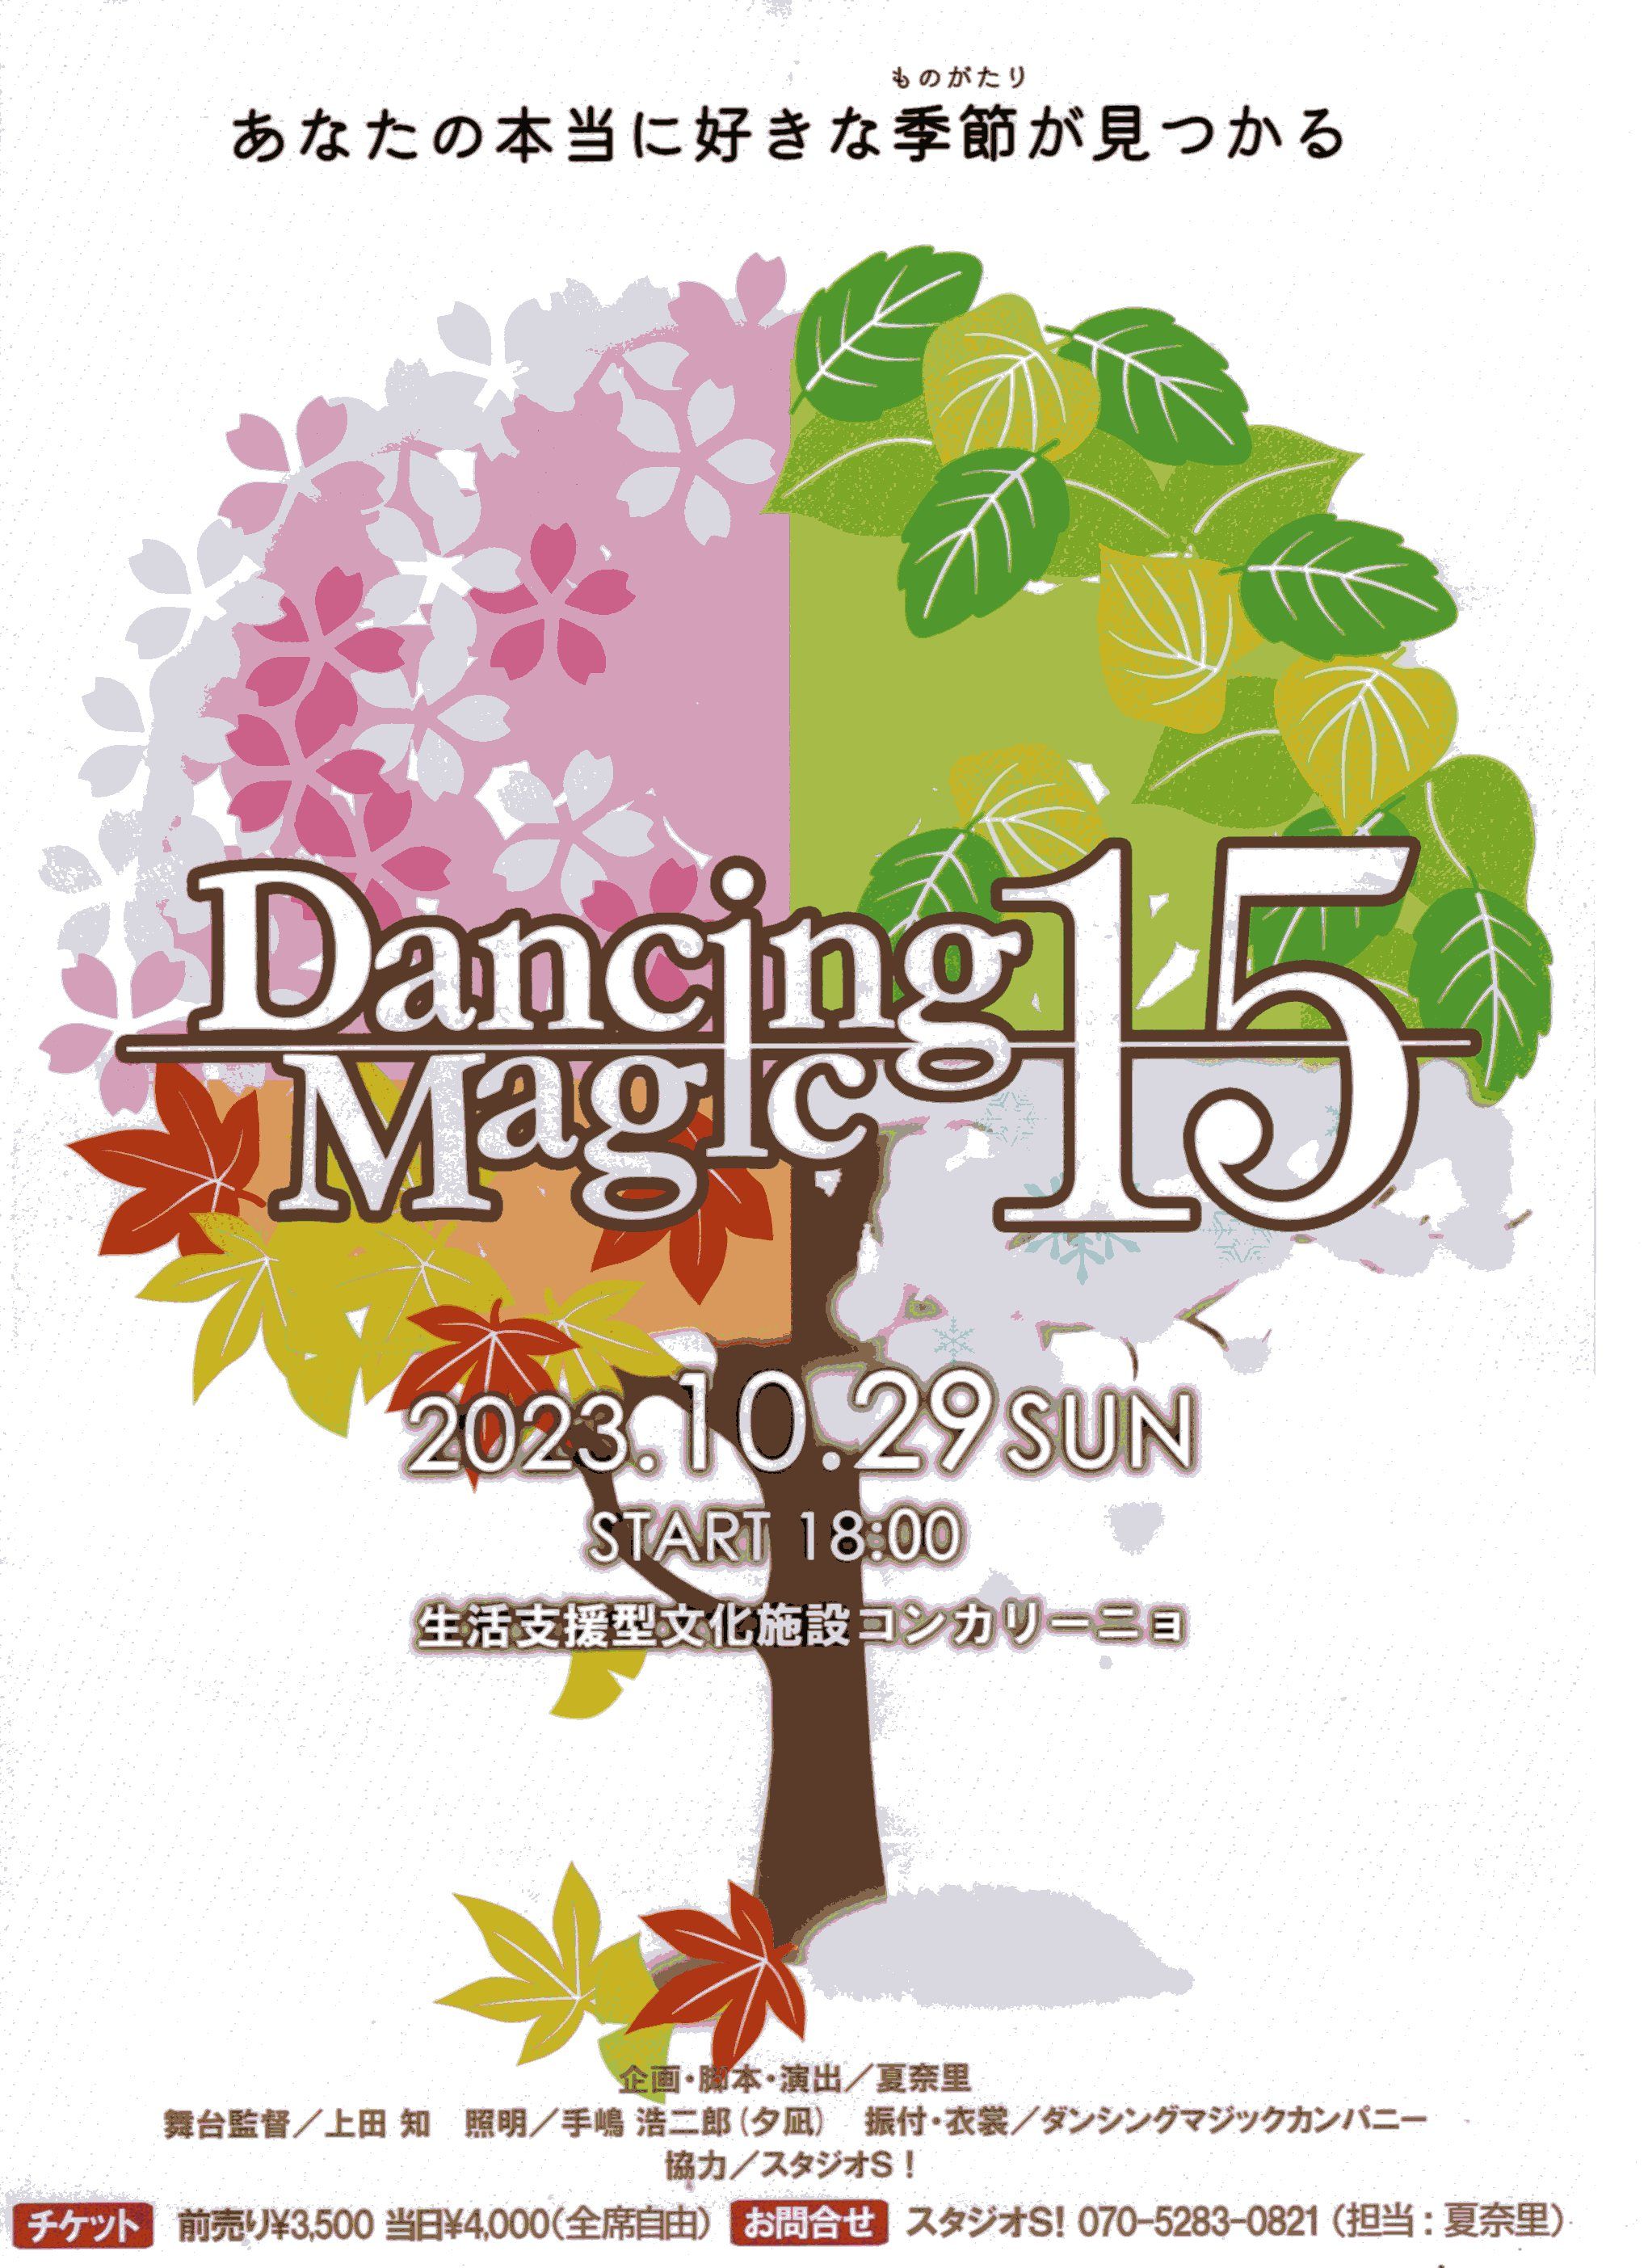 DancingMagic15 四季が織りなす四つの物語